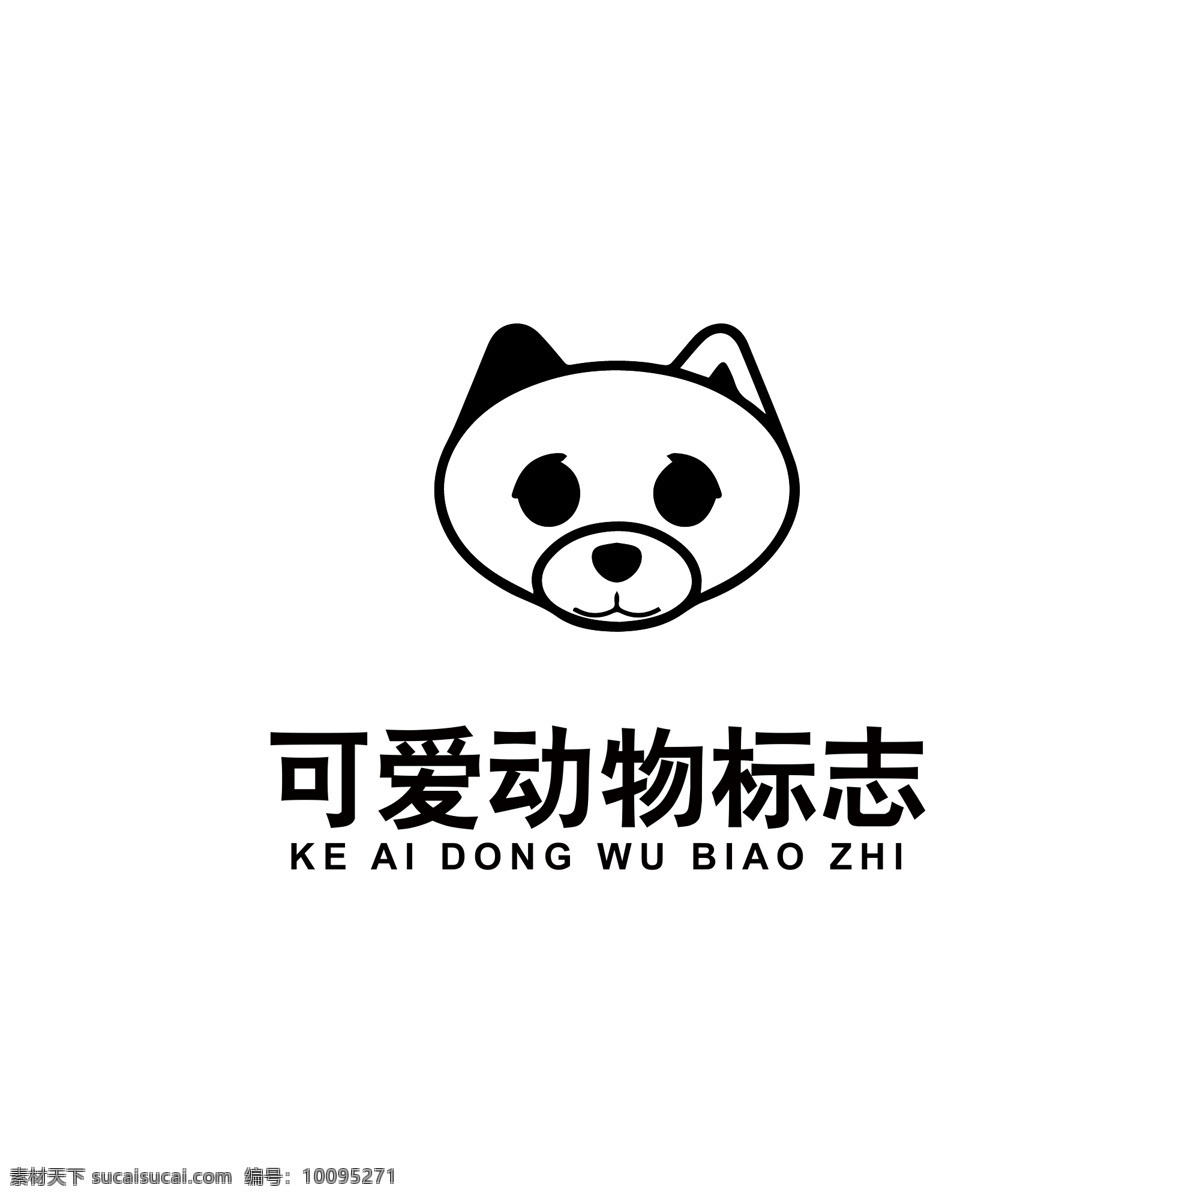 可爱 动物 logo 动物logo 可爱动物 熊猫logo 熊猫头像 品牌logo 通用logo logo设计 标识 标志 ai矢量